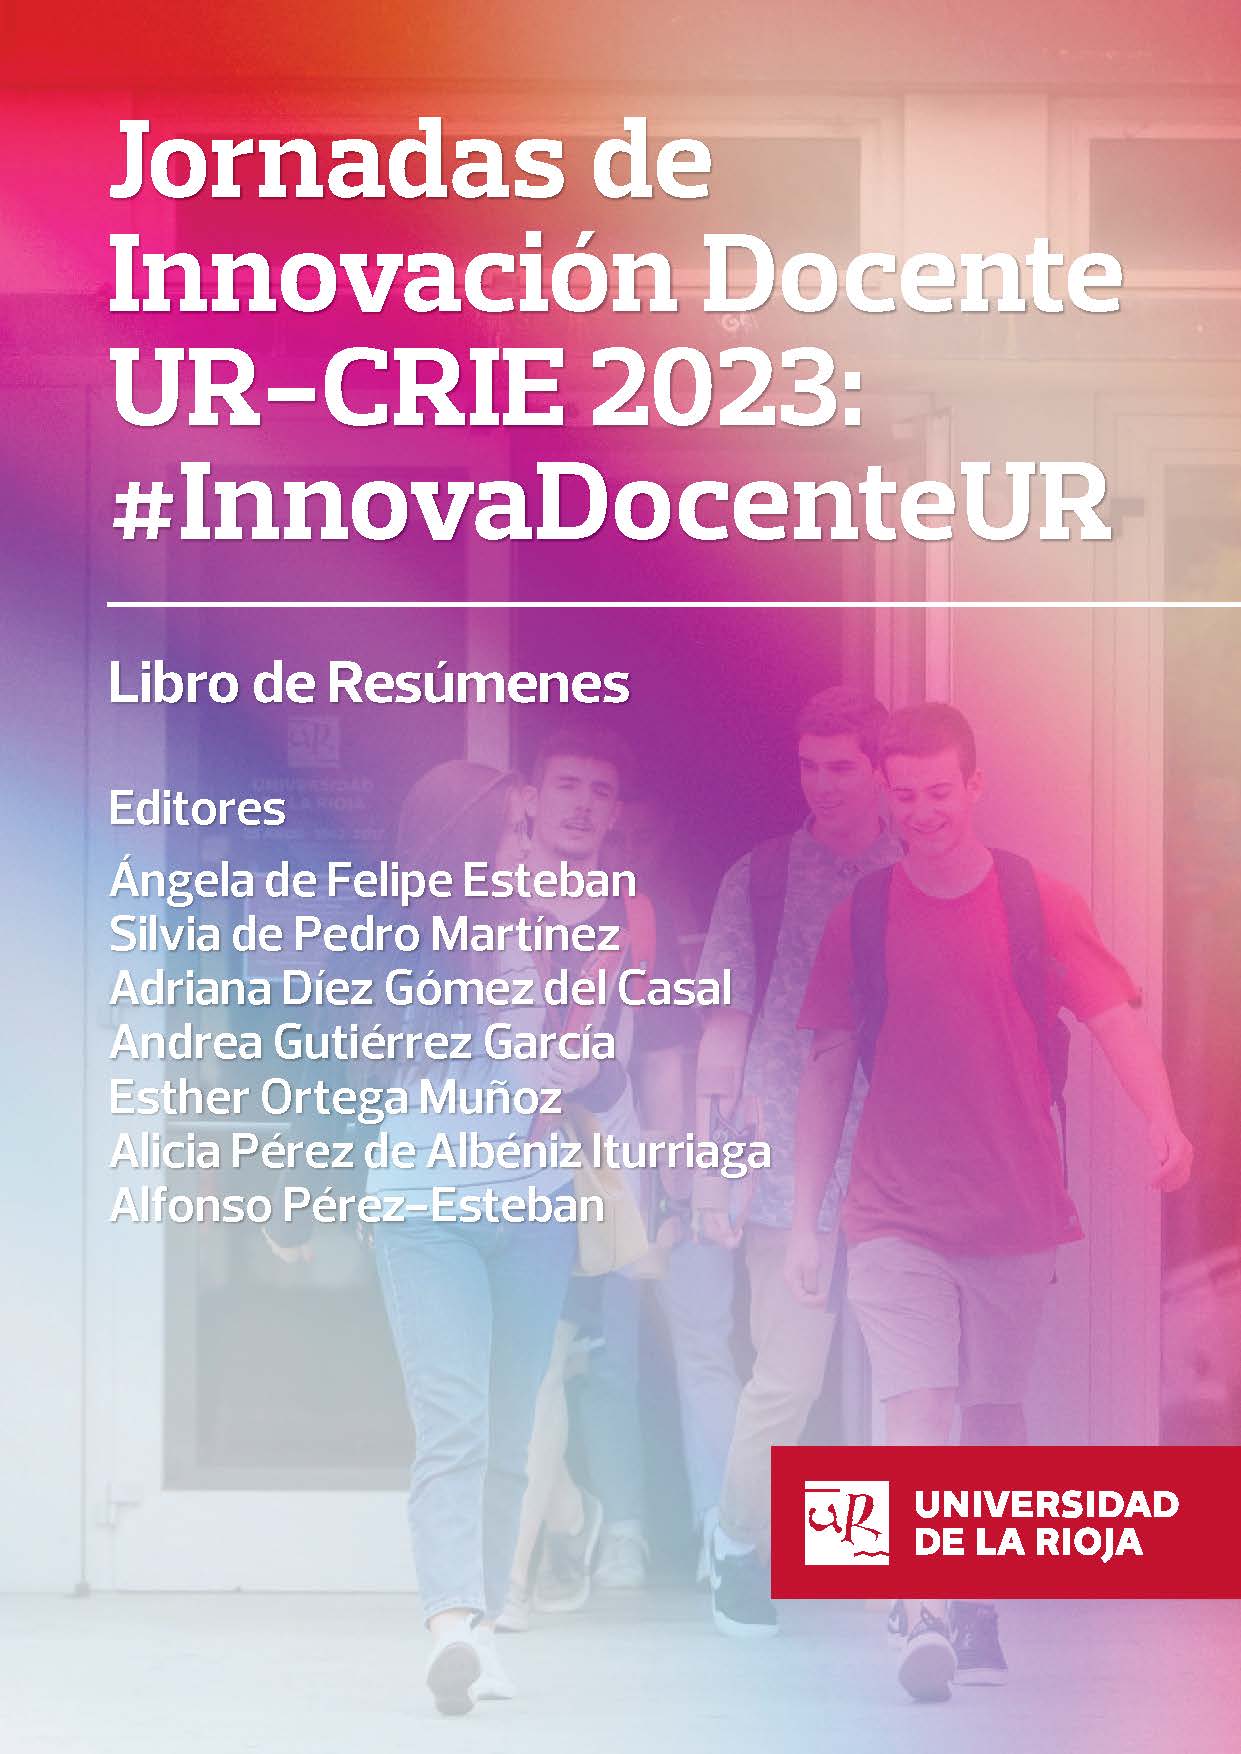 Imagen de portada del libro Jornadas de Innovación Docente UR-CRIE 2023